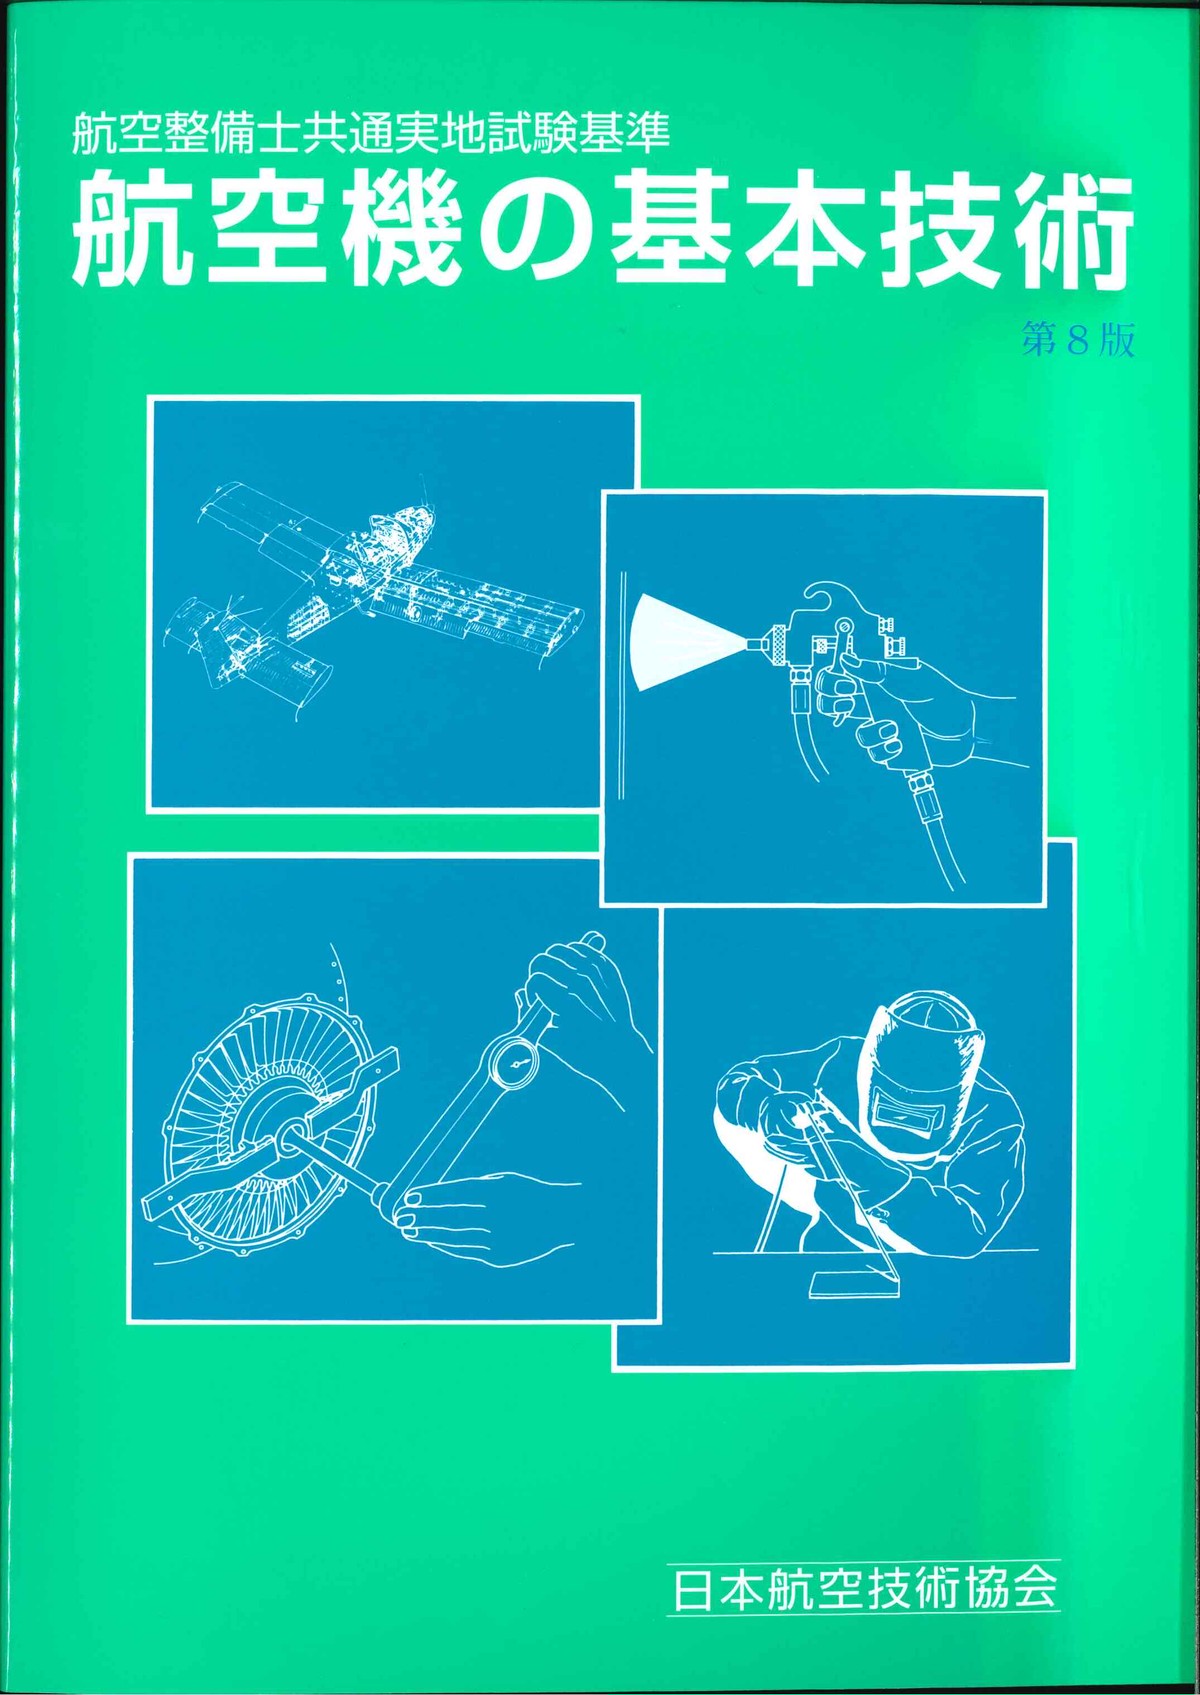 航空機の基本技術 Rev.8 発売中!! 日本航空技術協会オンラインショップ